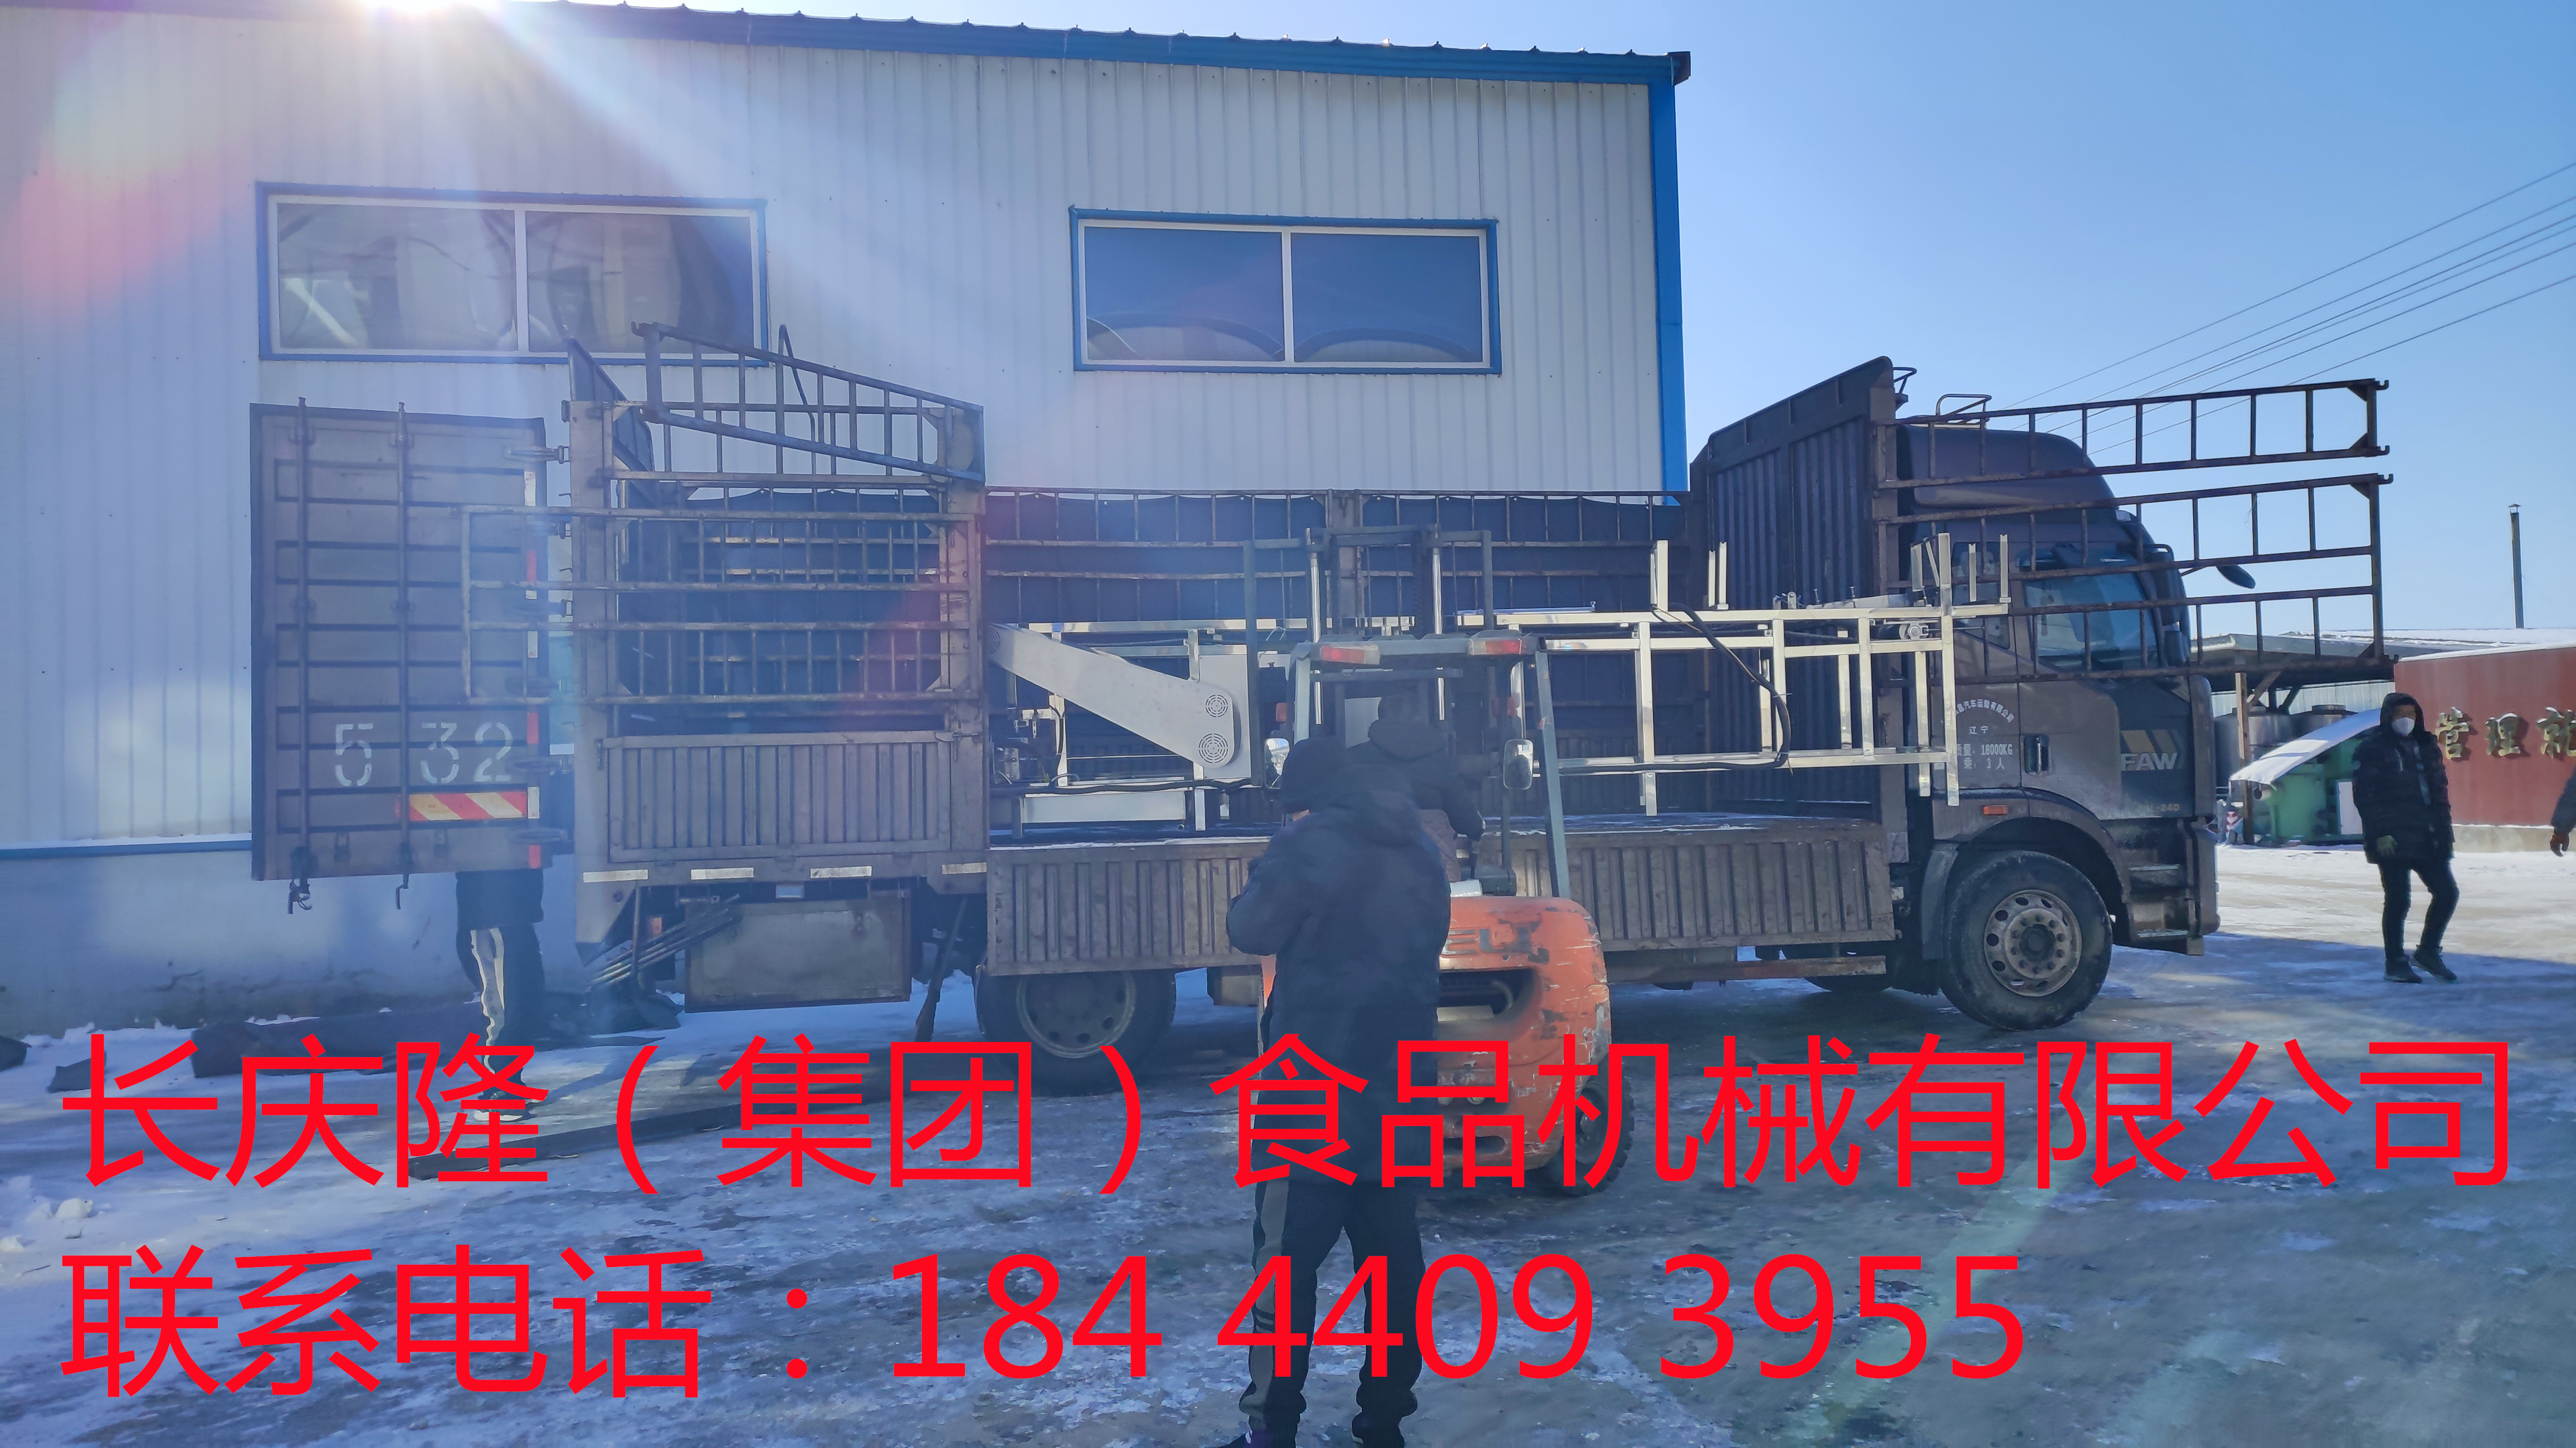 发往锦州的大型豆腐机设备装车发货 (4)_副本.jpg